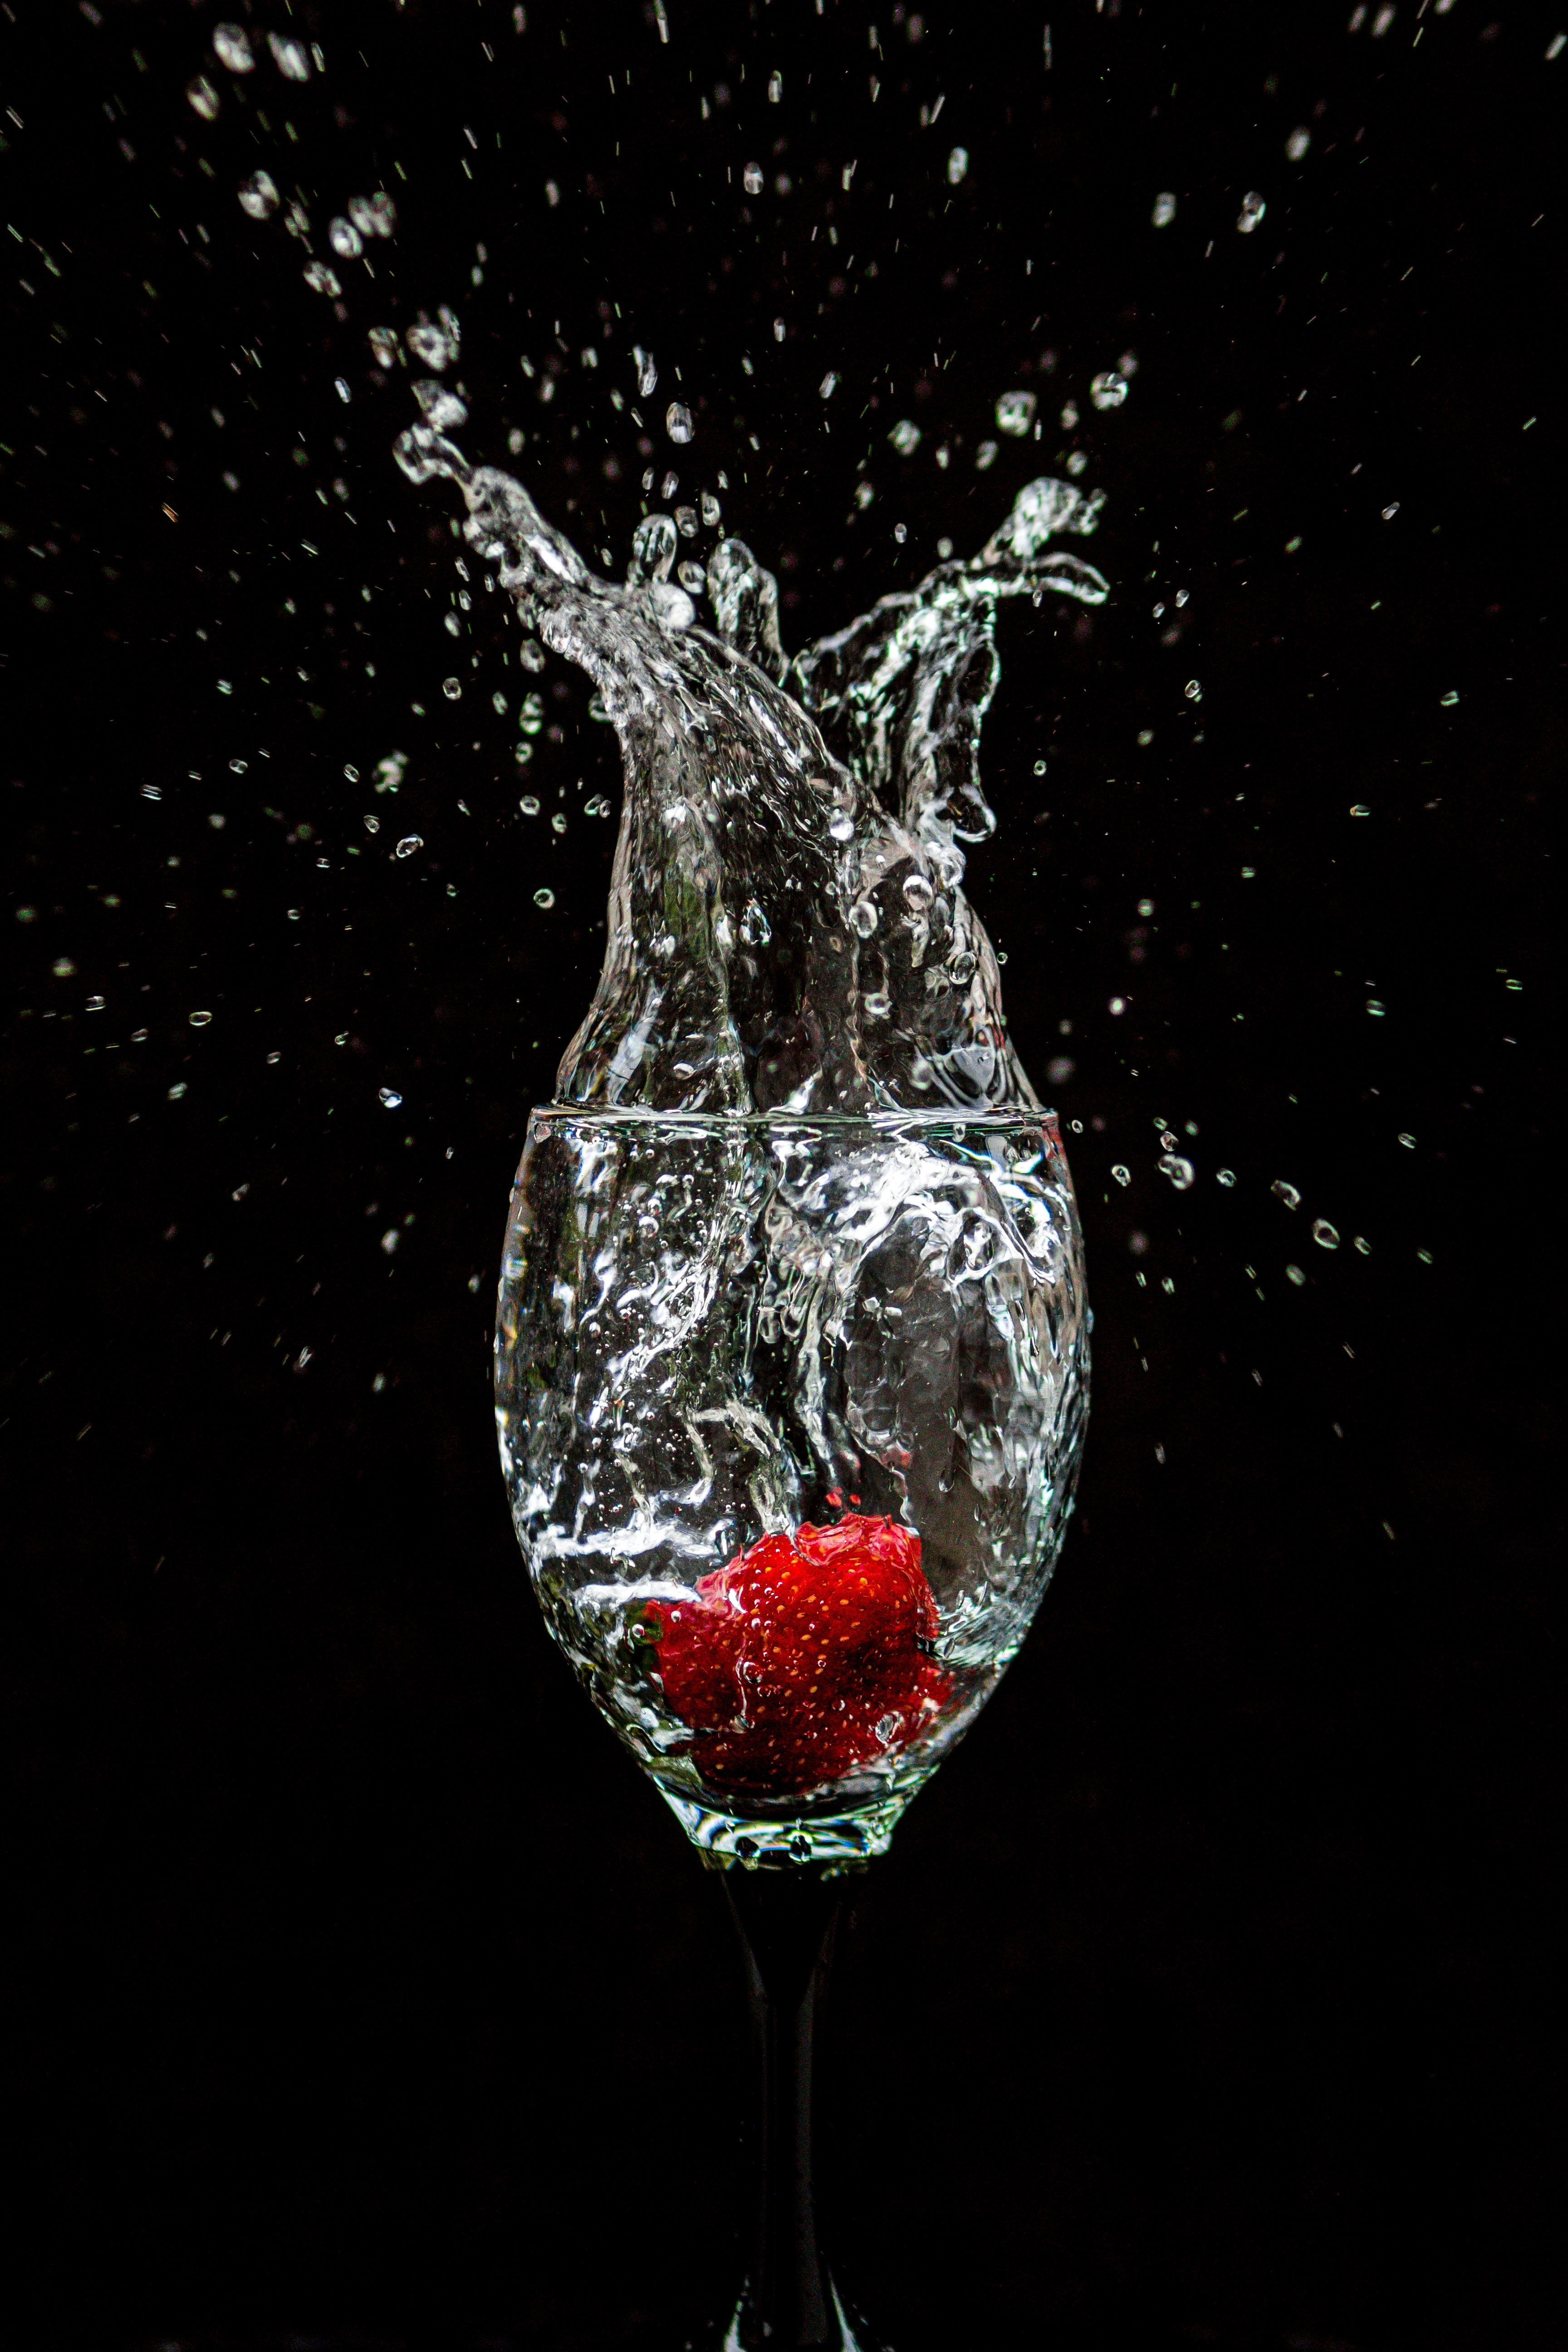 strawberry, splash, wineglass, black, goblet Aesthetic wallpaper